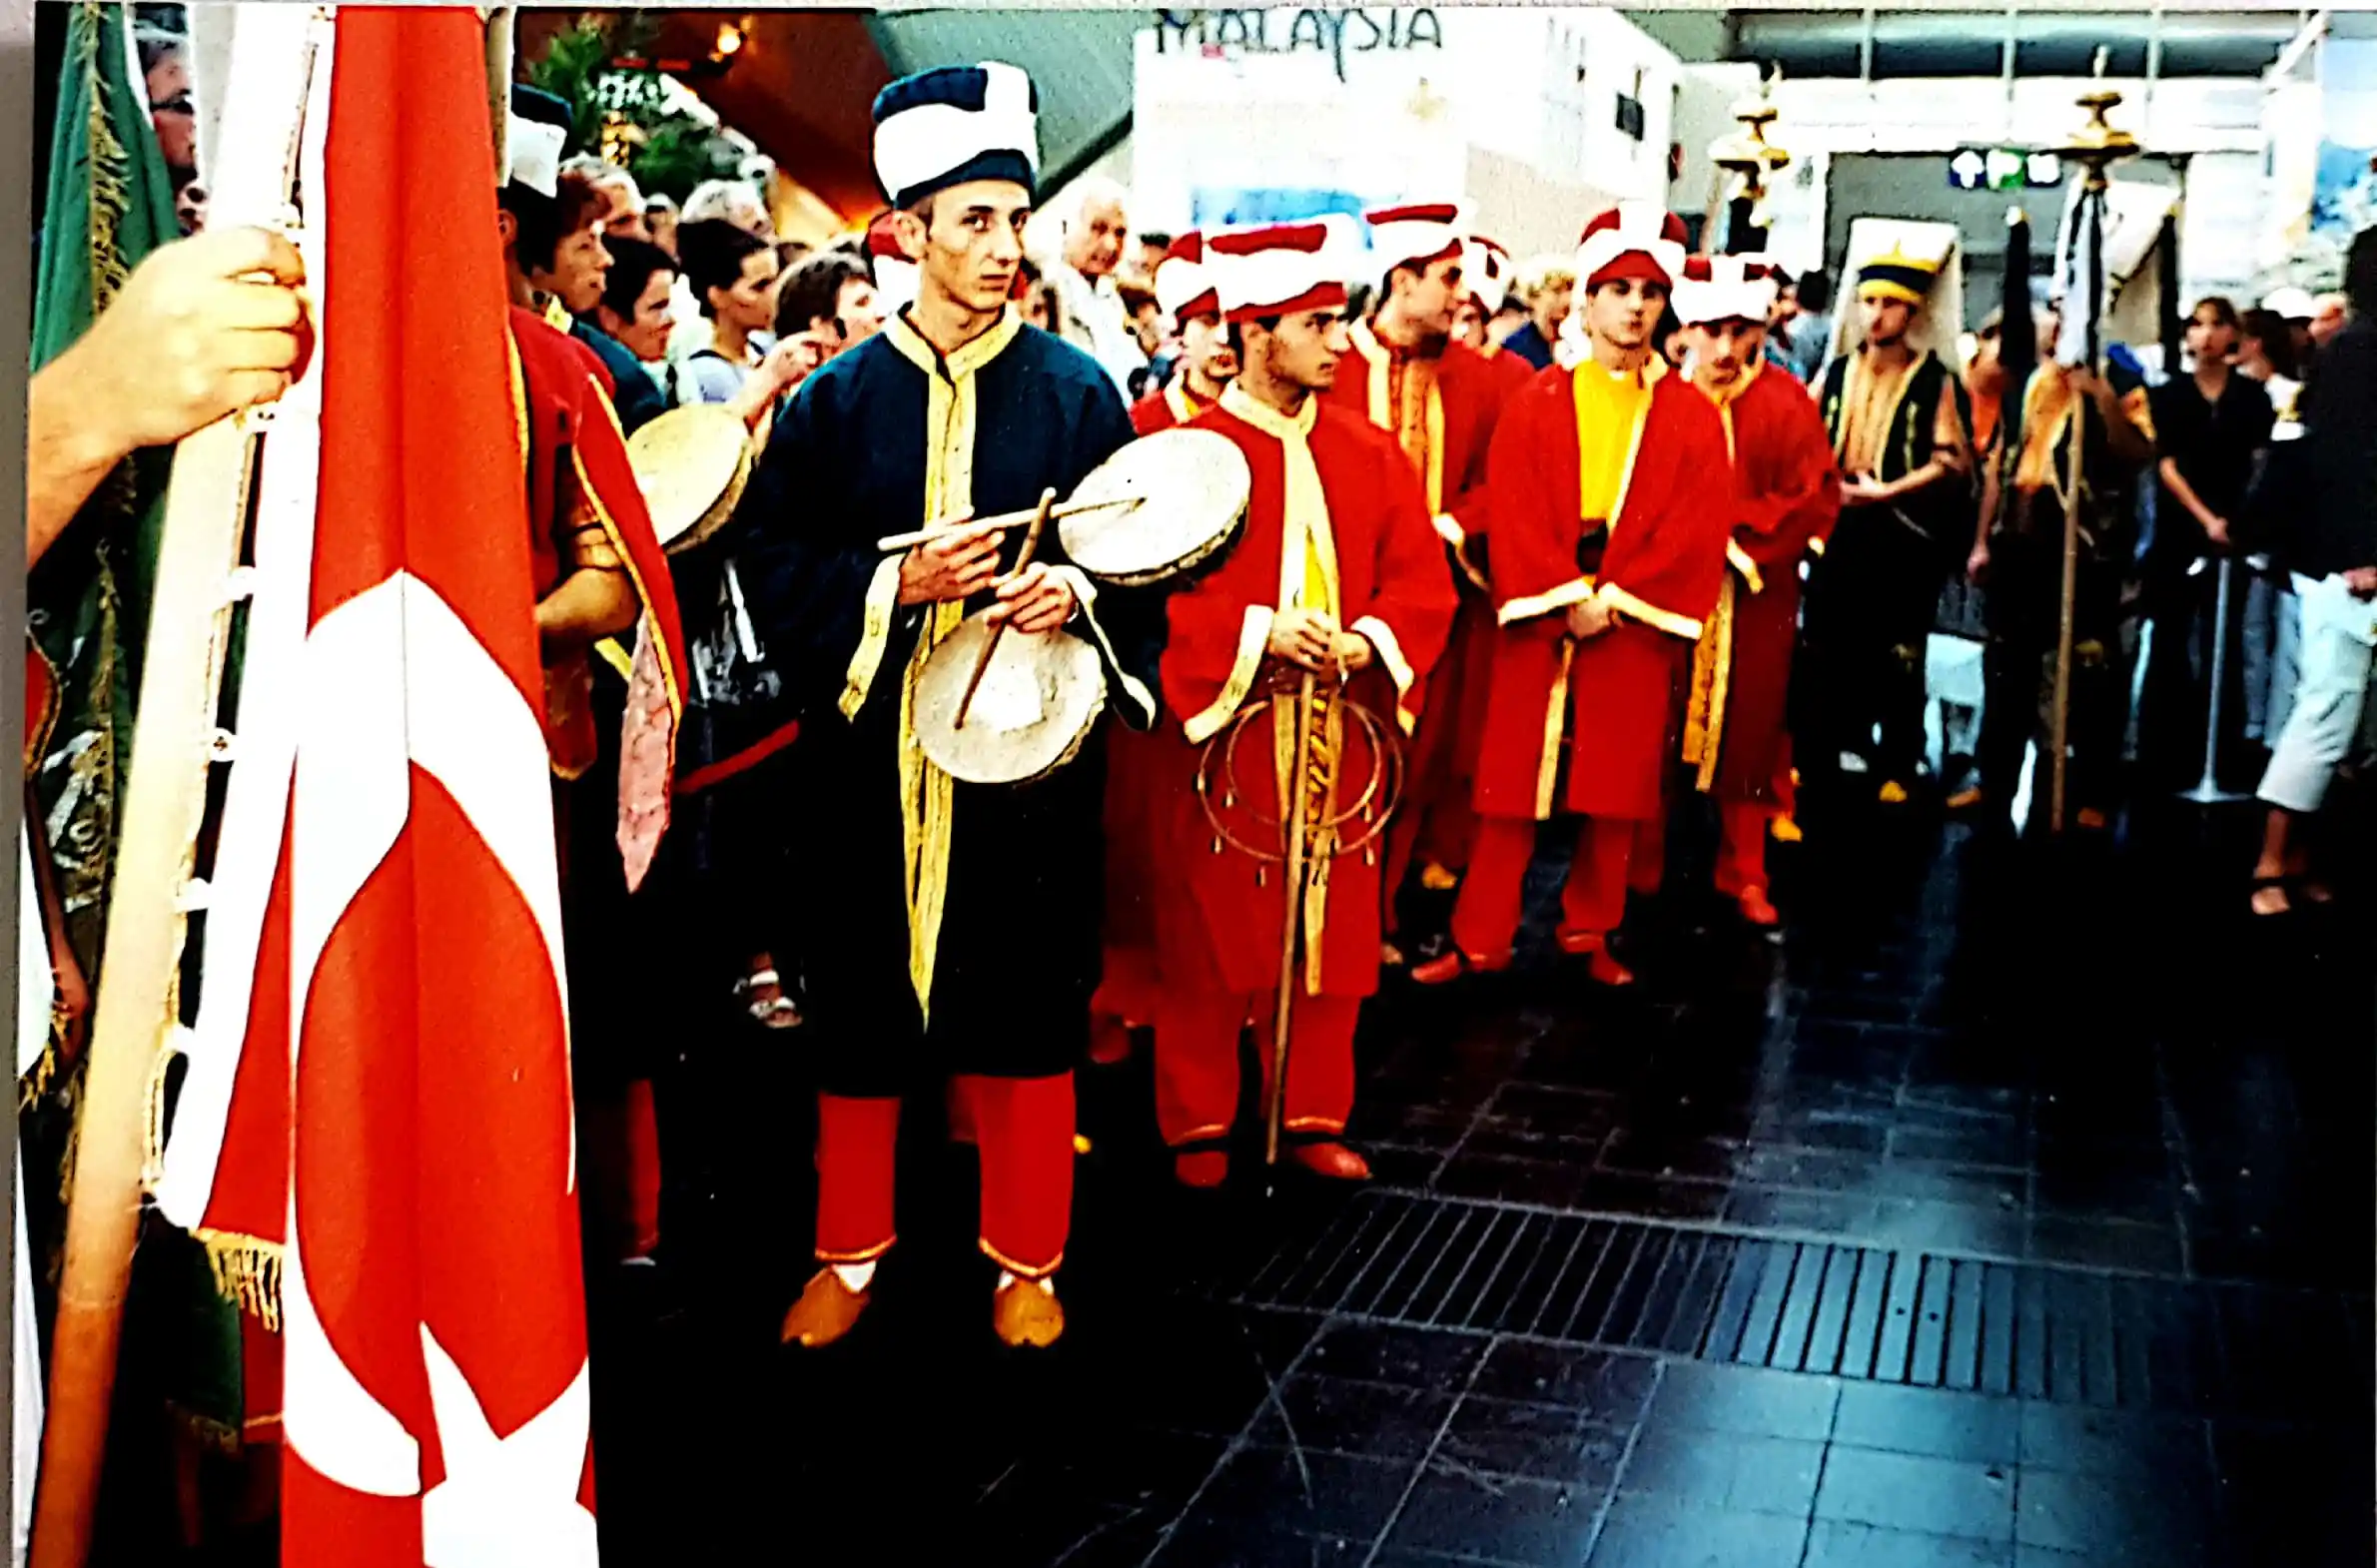 Abbildung-einer-musikalischen-tuerkisch-traditionellen-Hochzeitsfolklore-bei-der-expo-in-hannover-im-jahr-2000-IISW